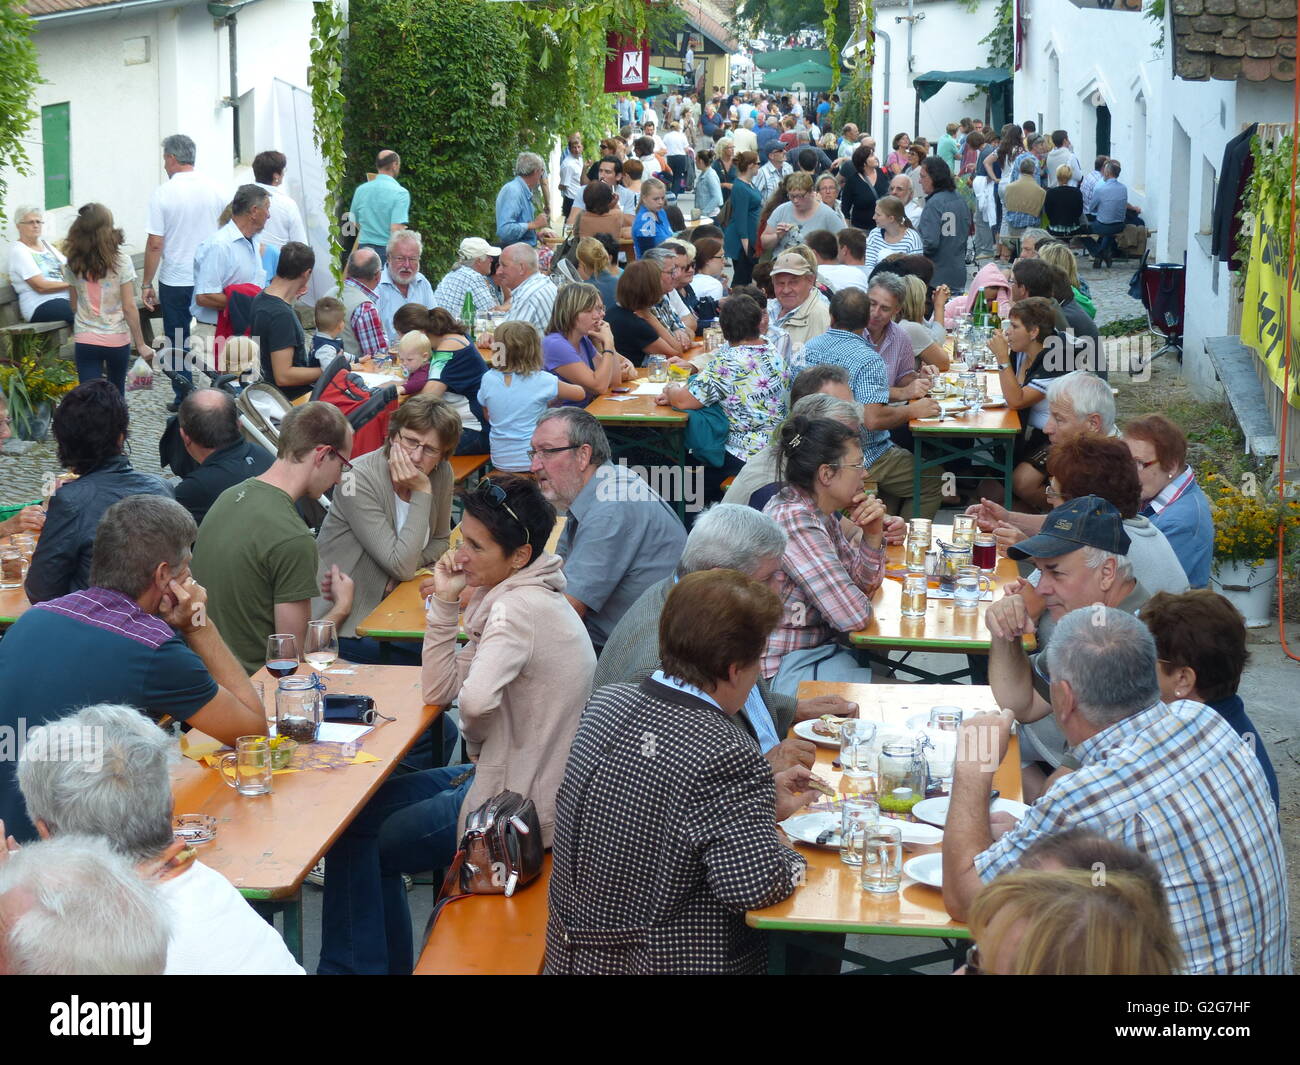 Austria - Hausdorf. Lower Austria. Wein Viertel, Wein region. Village people gather together on the street and enjoy local wine. Stock Photo